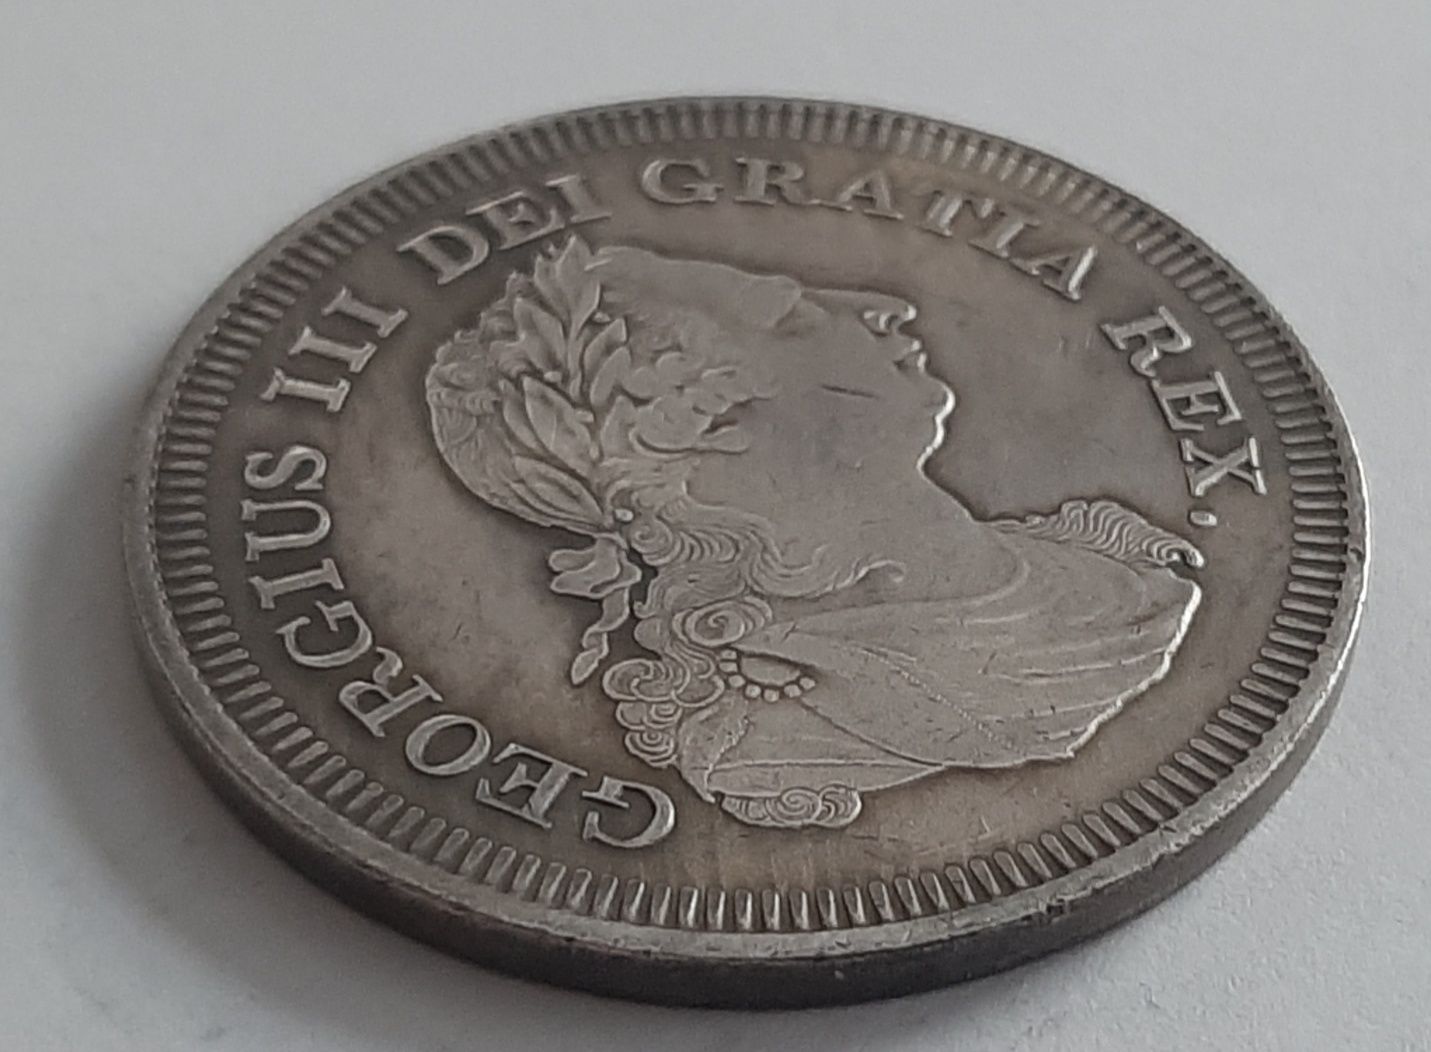 Moneta 5 szylingów 1804 r - Żeton Banku Anglii.